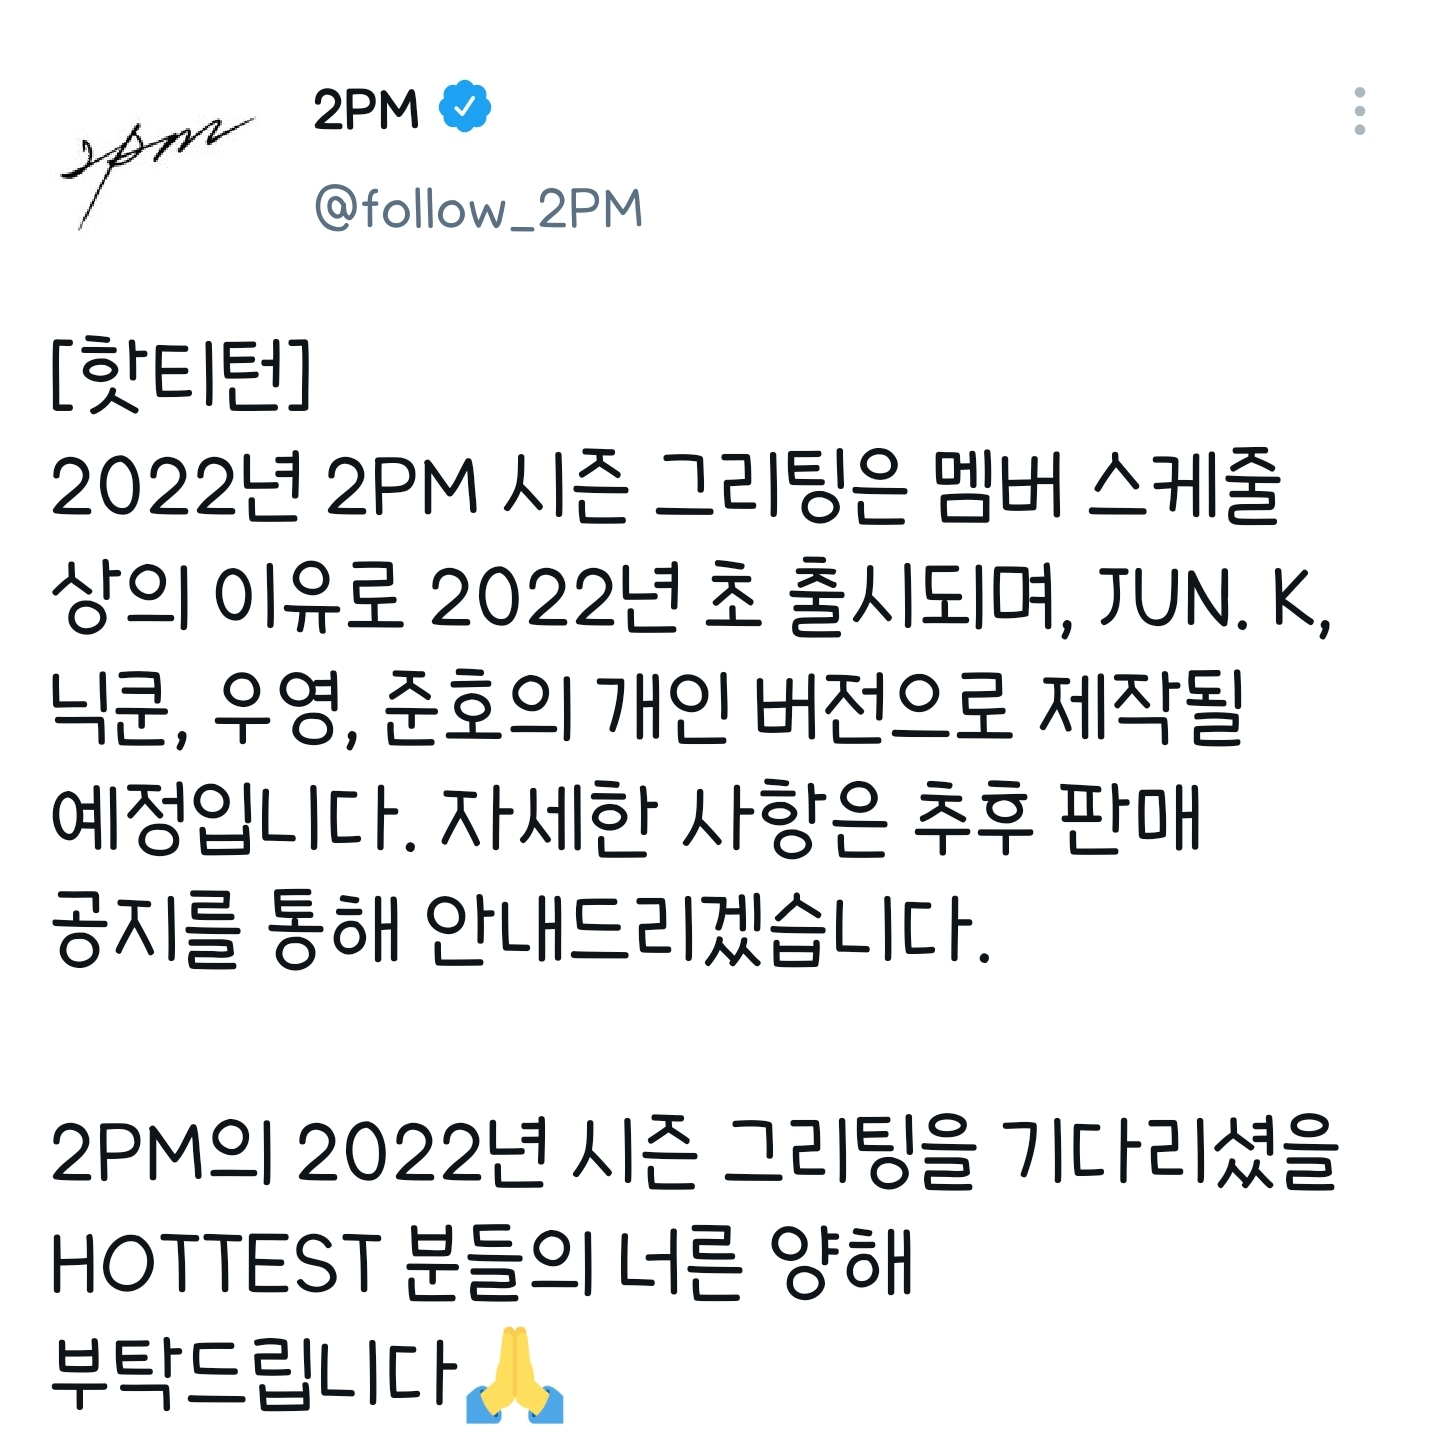 NOTICE] 2PM 2022年シーズングリーティングについて | 2PM Fansite 6souls